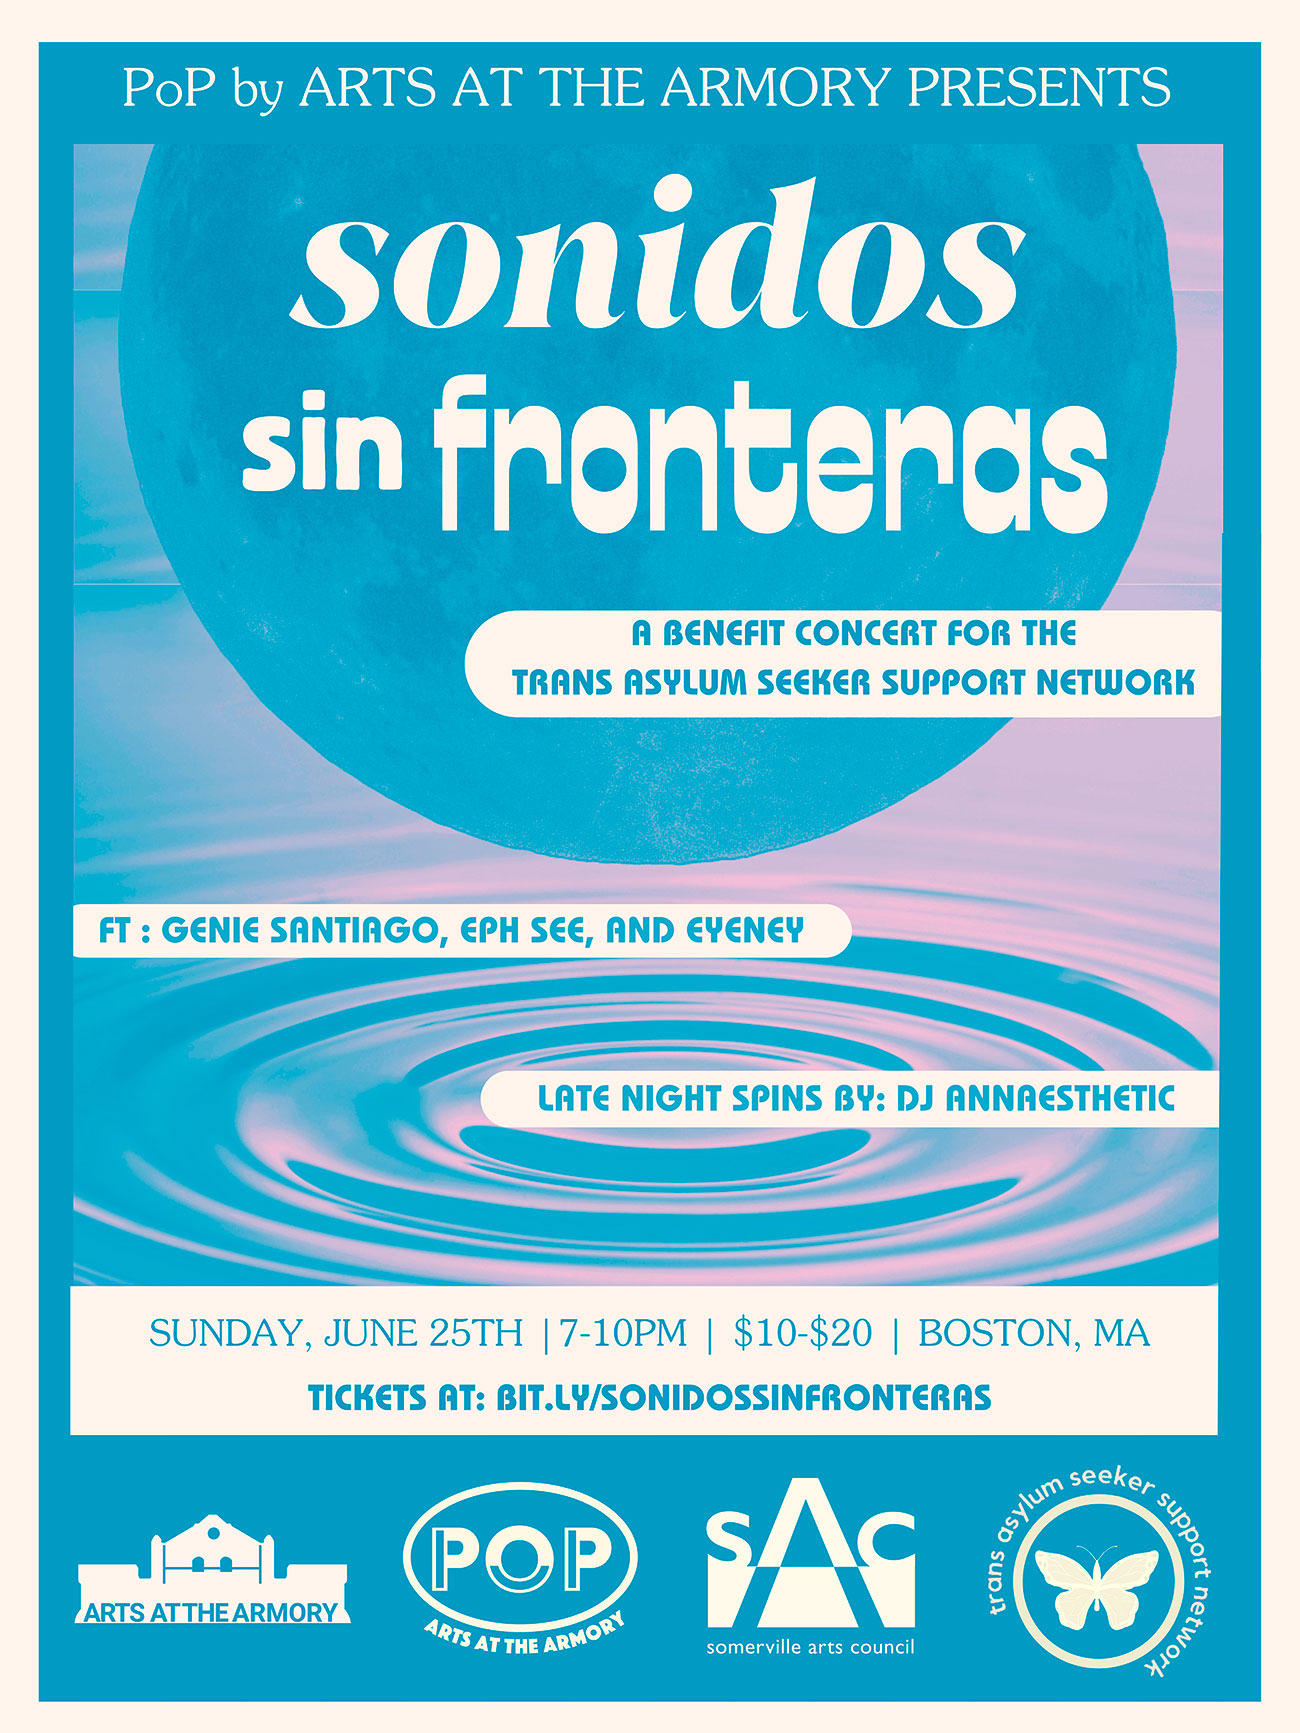 TASSN Presents Genie Santiago + Friends sonidos sin fronteras